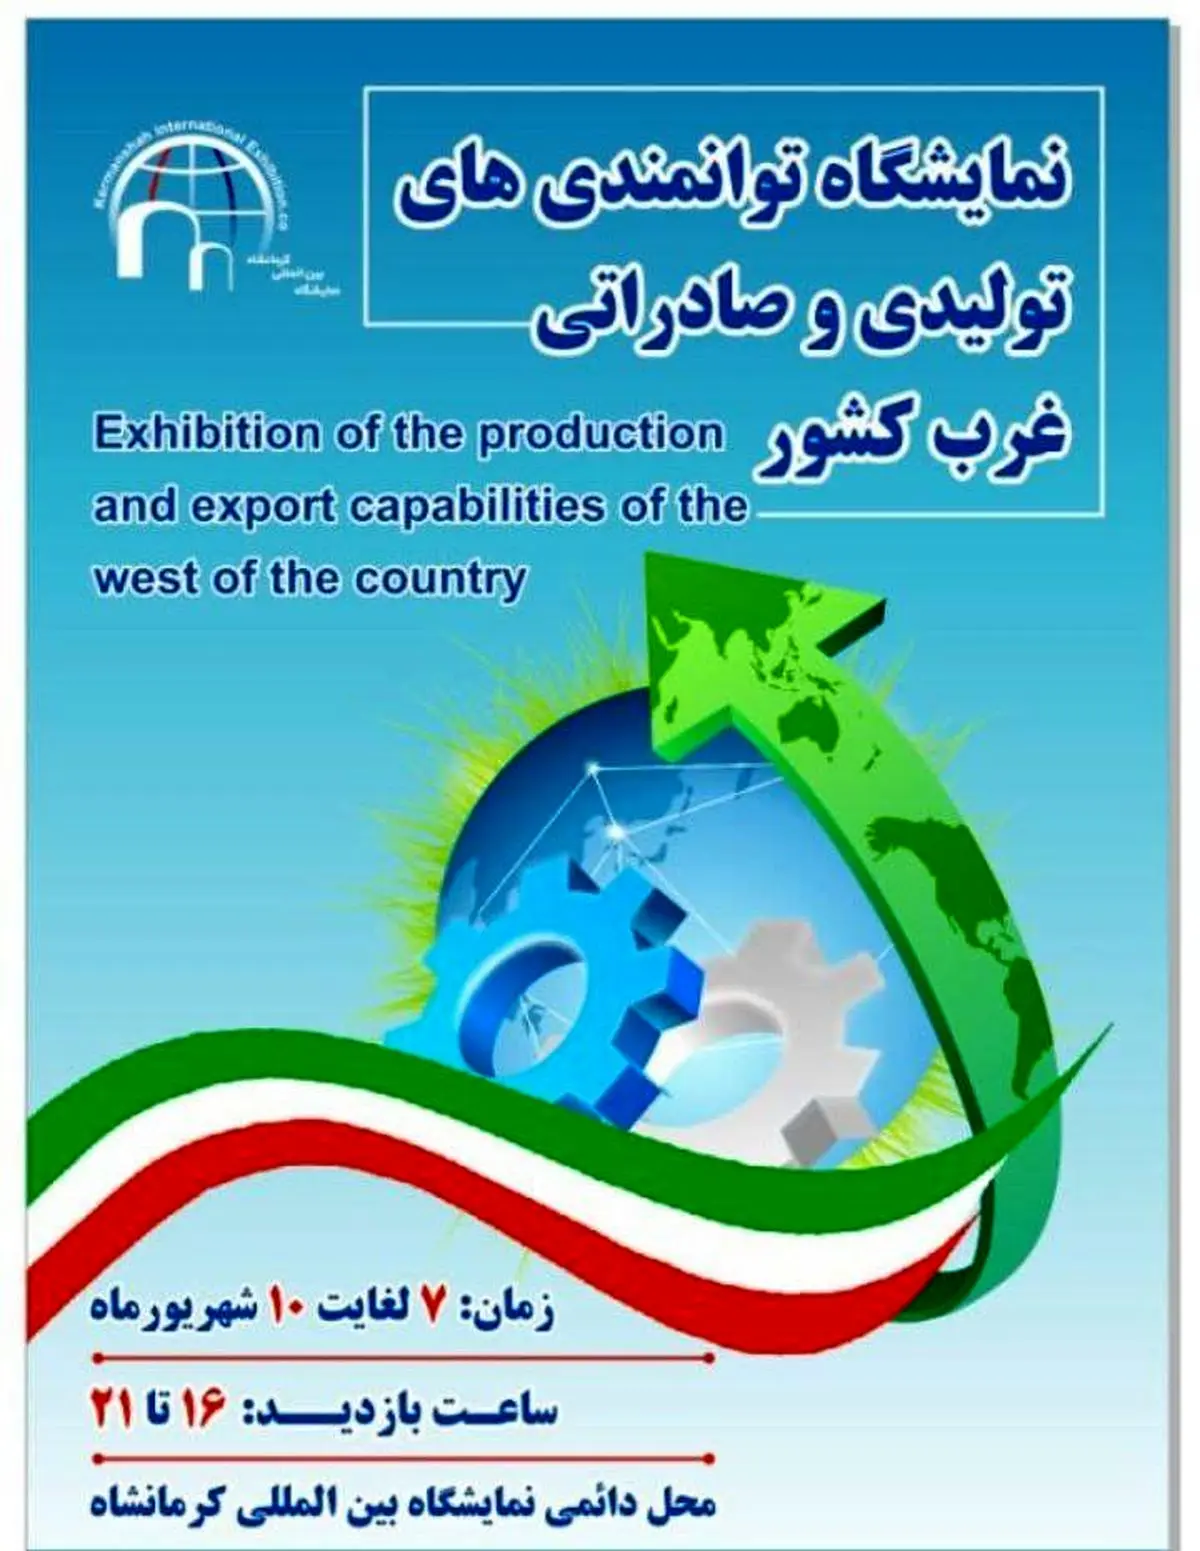 آغاز به کار نمایشگاه توانمندی‌های تولیدی و صادراتی غرب کشور از فردا در کرمانشاه
